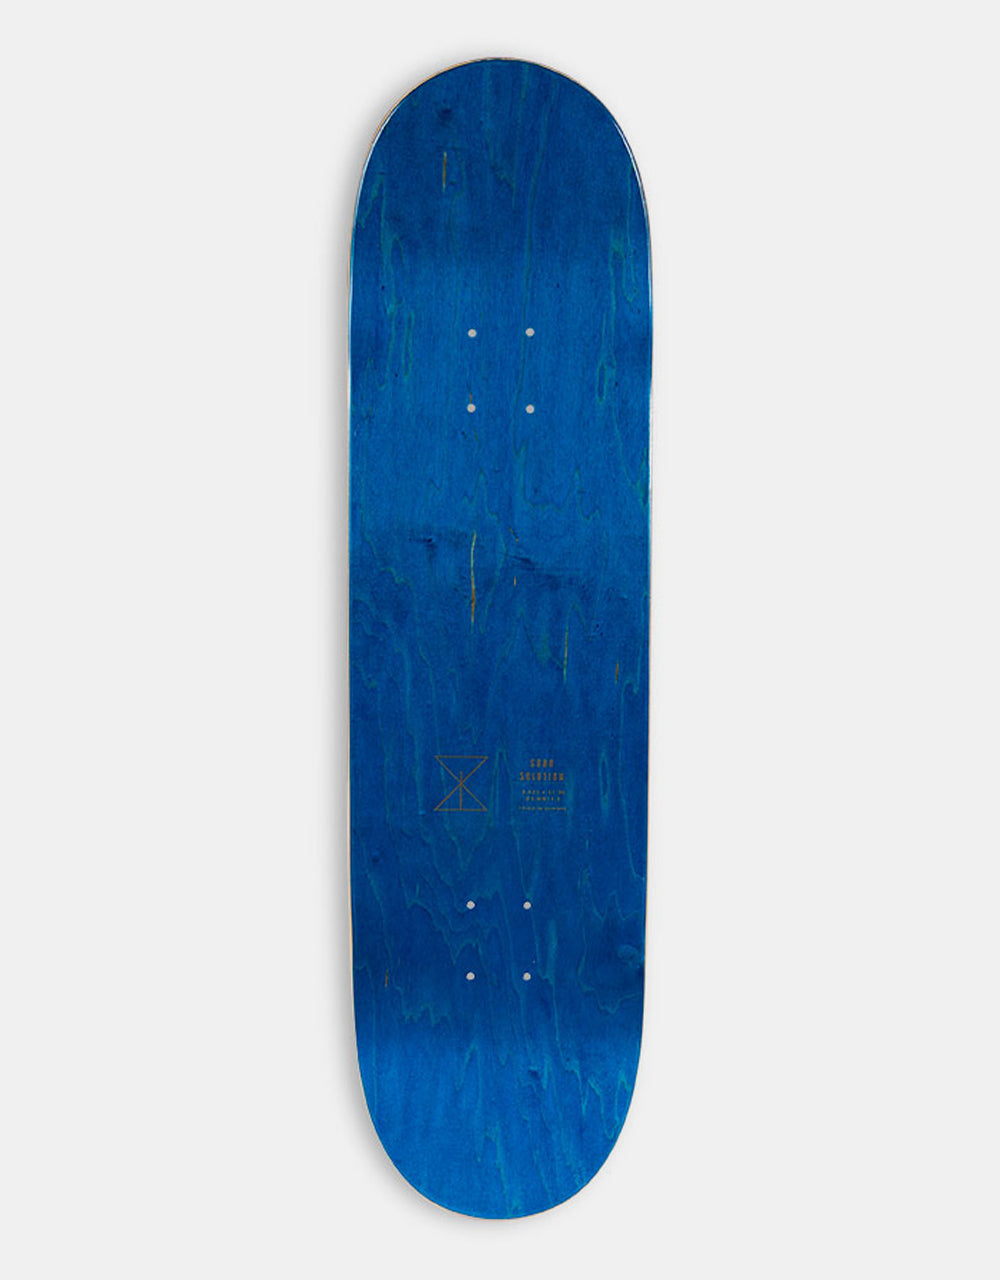 Sour Nisse Burn Skateboard Deck - 8.6"